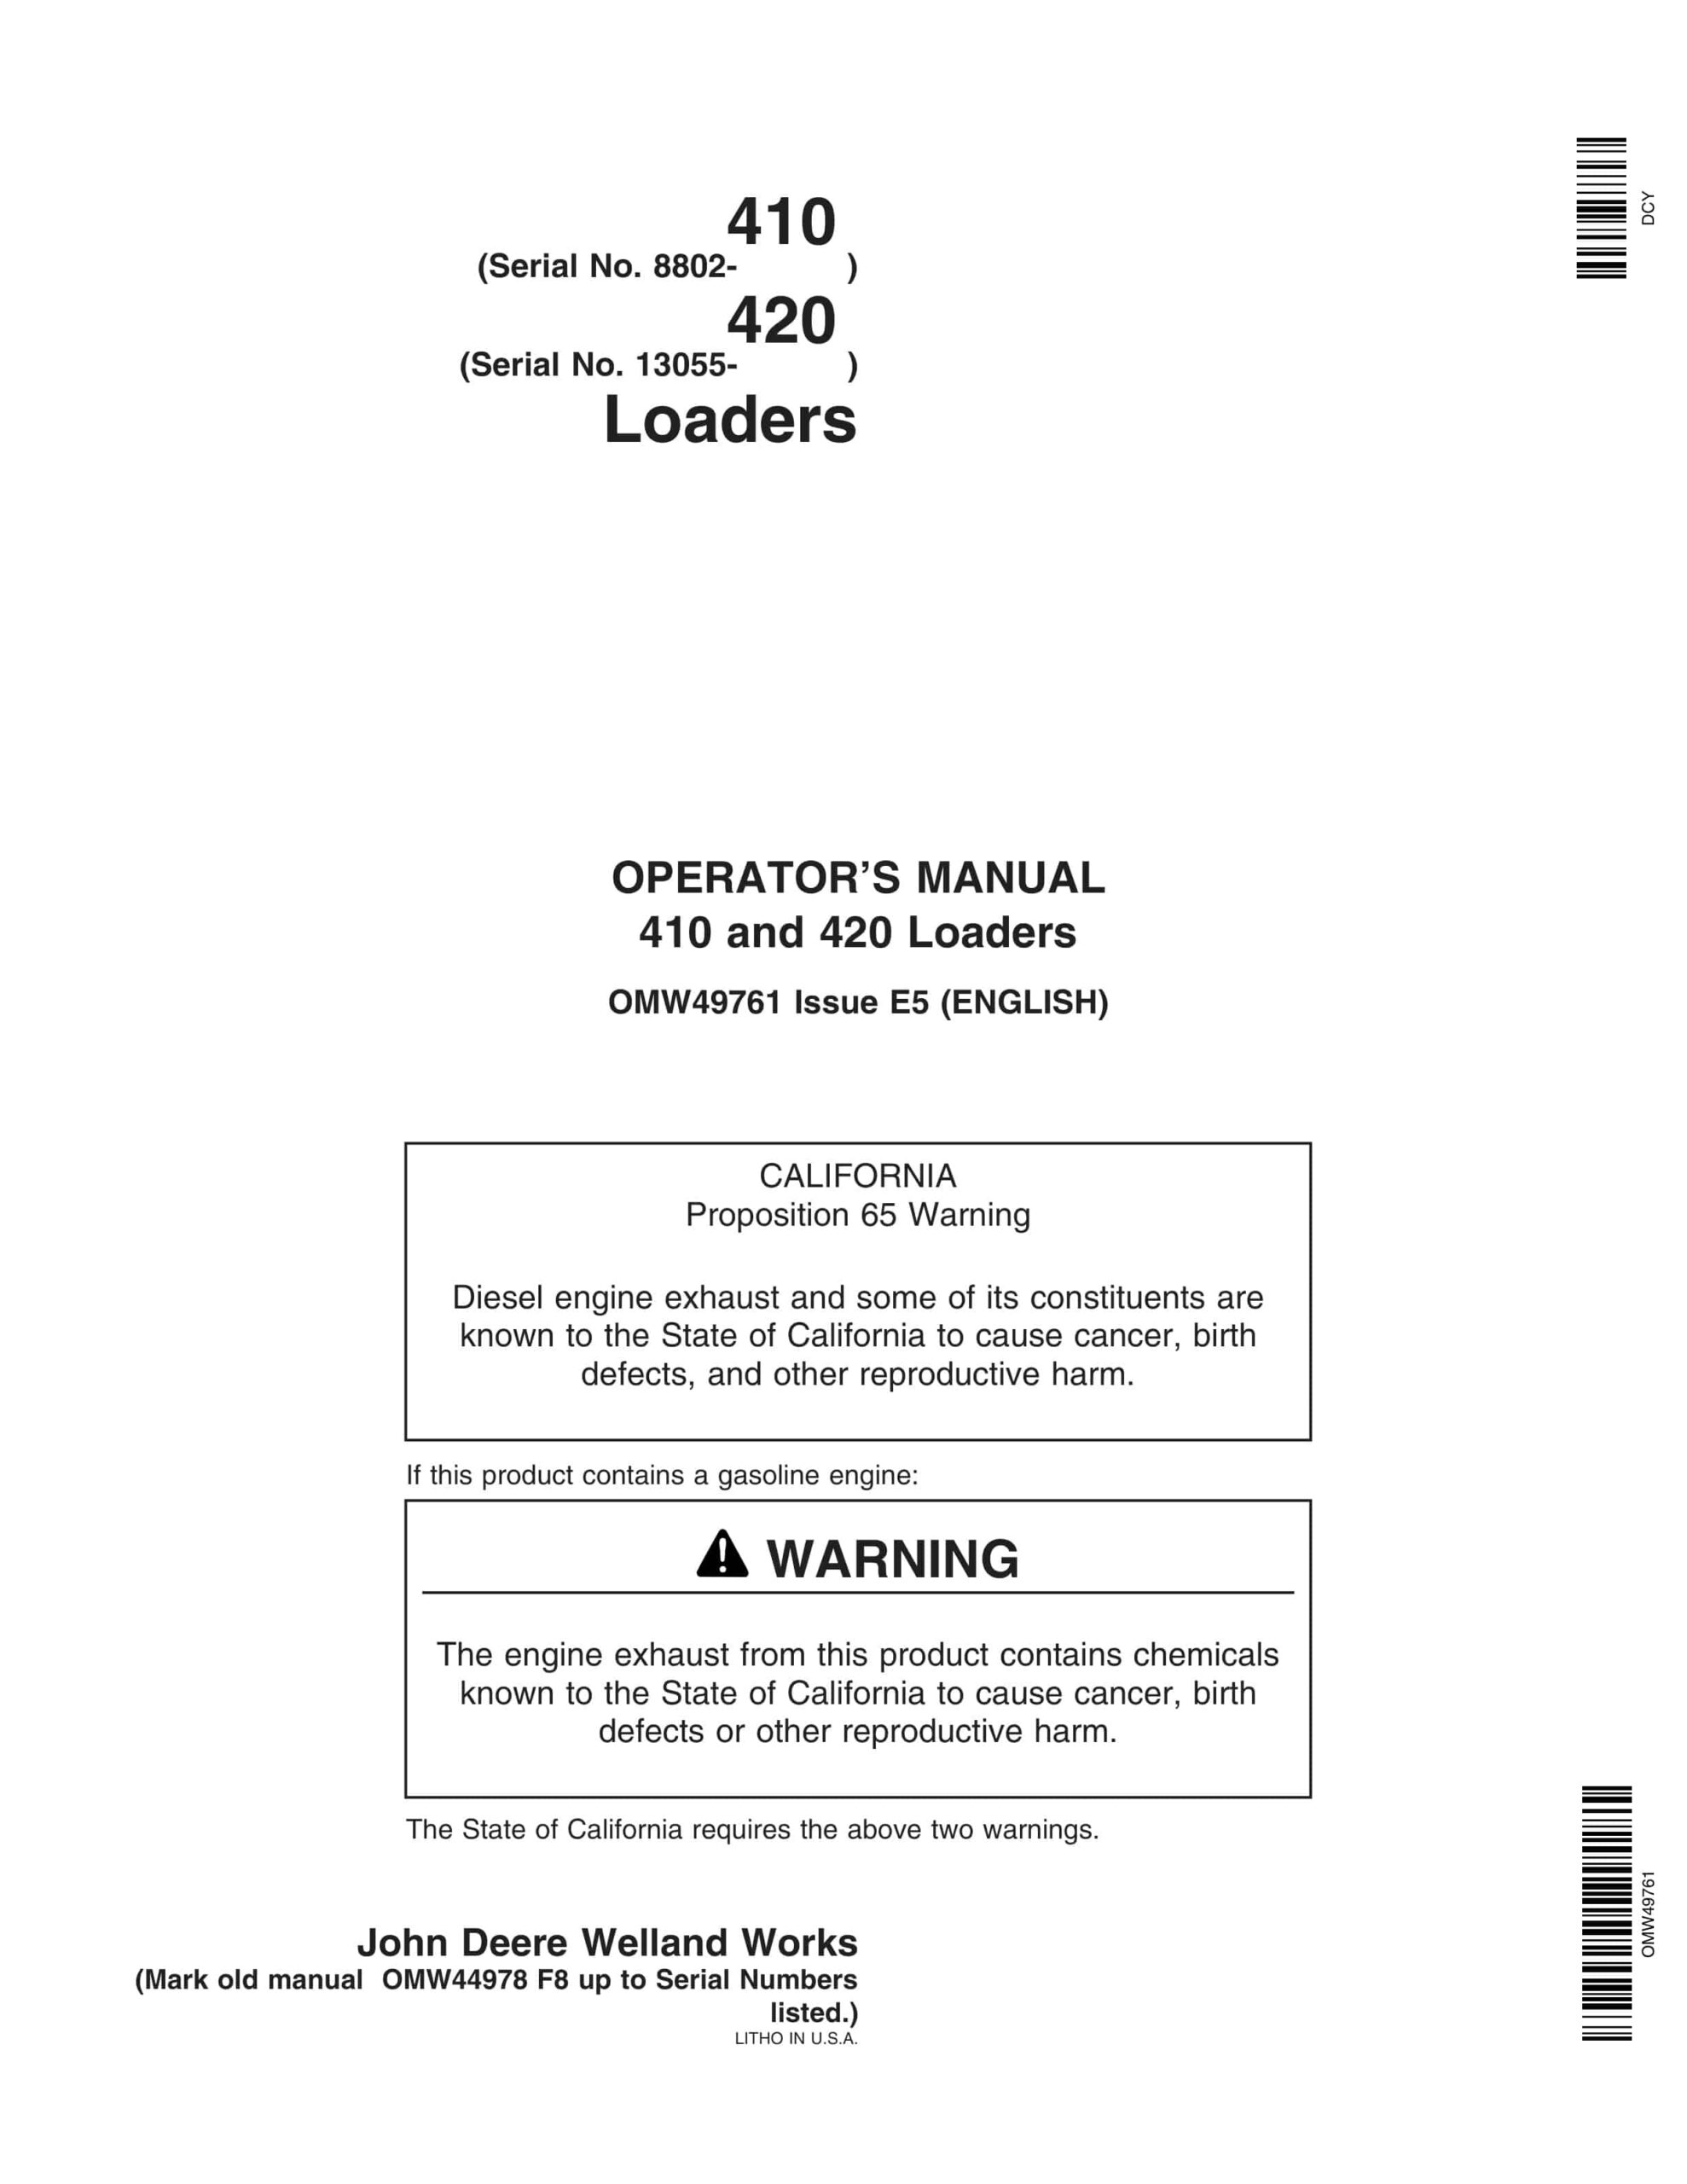 John Deere 410 and 420 Loader Operator Manual OMW49761-1